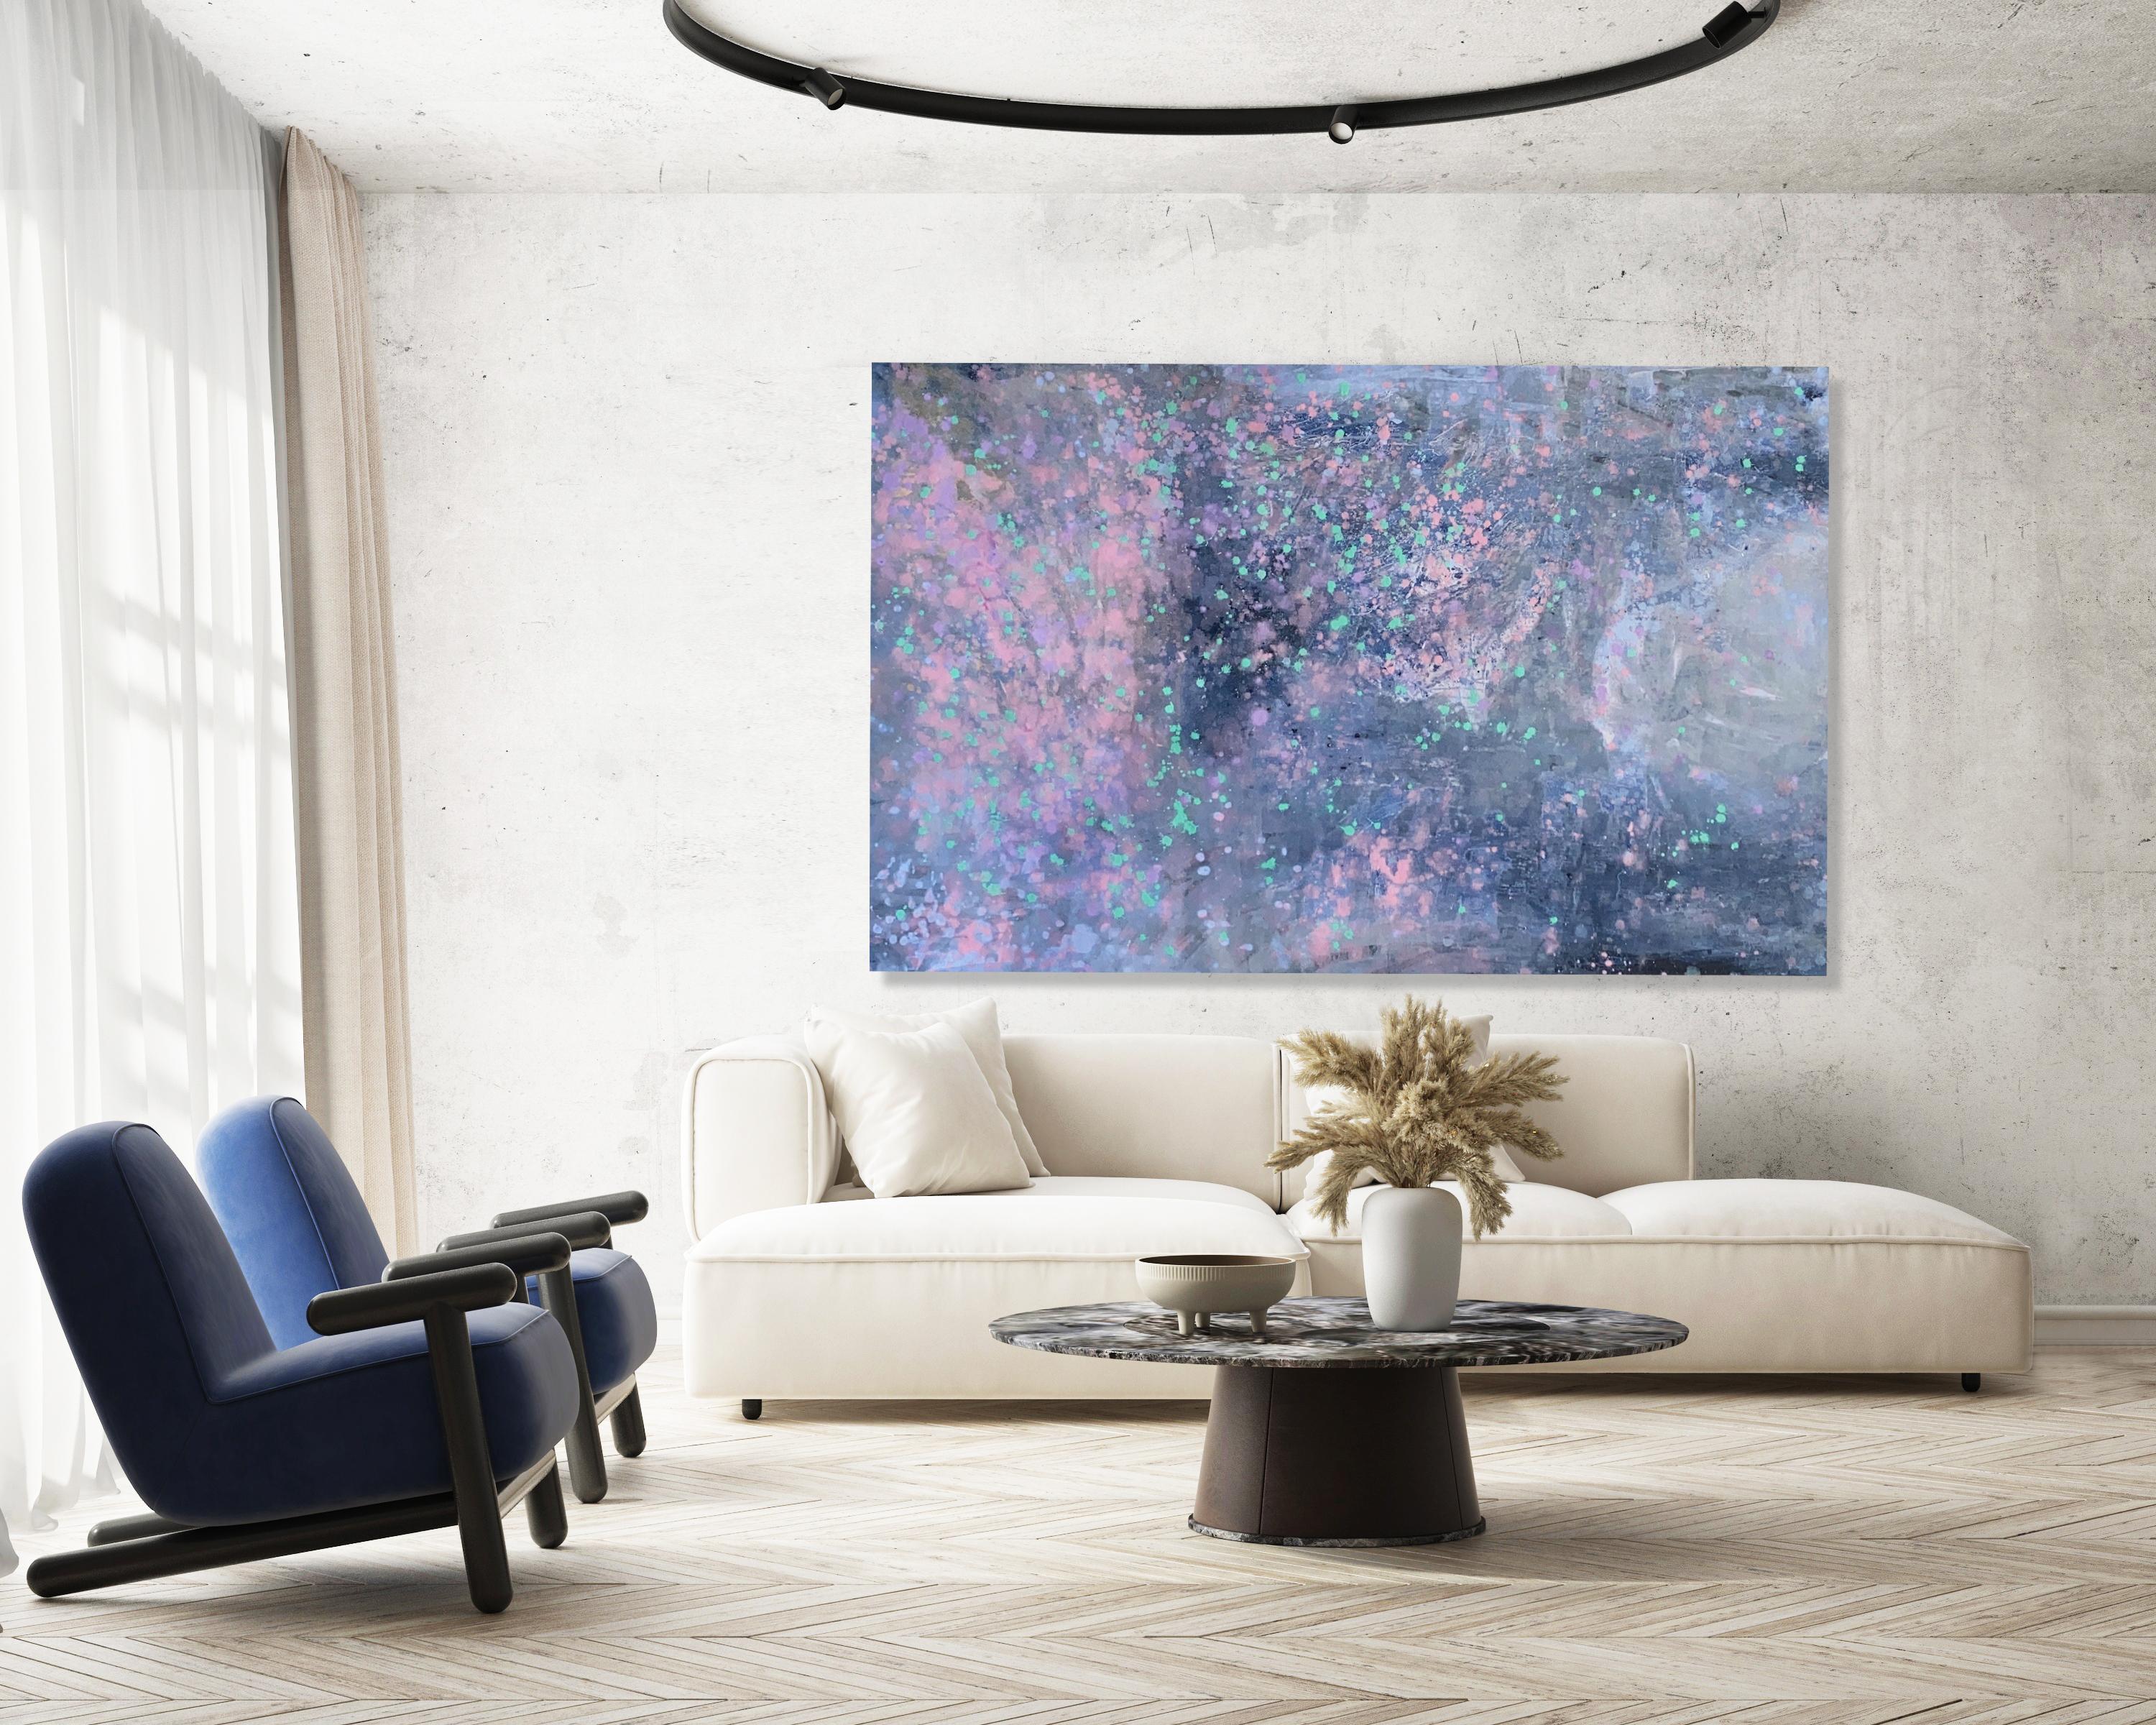 Peinture d'art abstraite sur toile bleue, grise et rose - Milky Way - Grande déclaration - Art de Kathleen Rhee